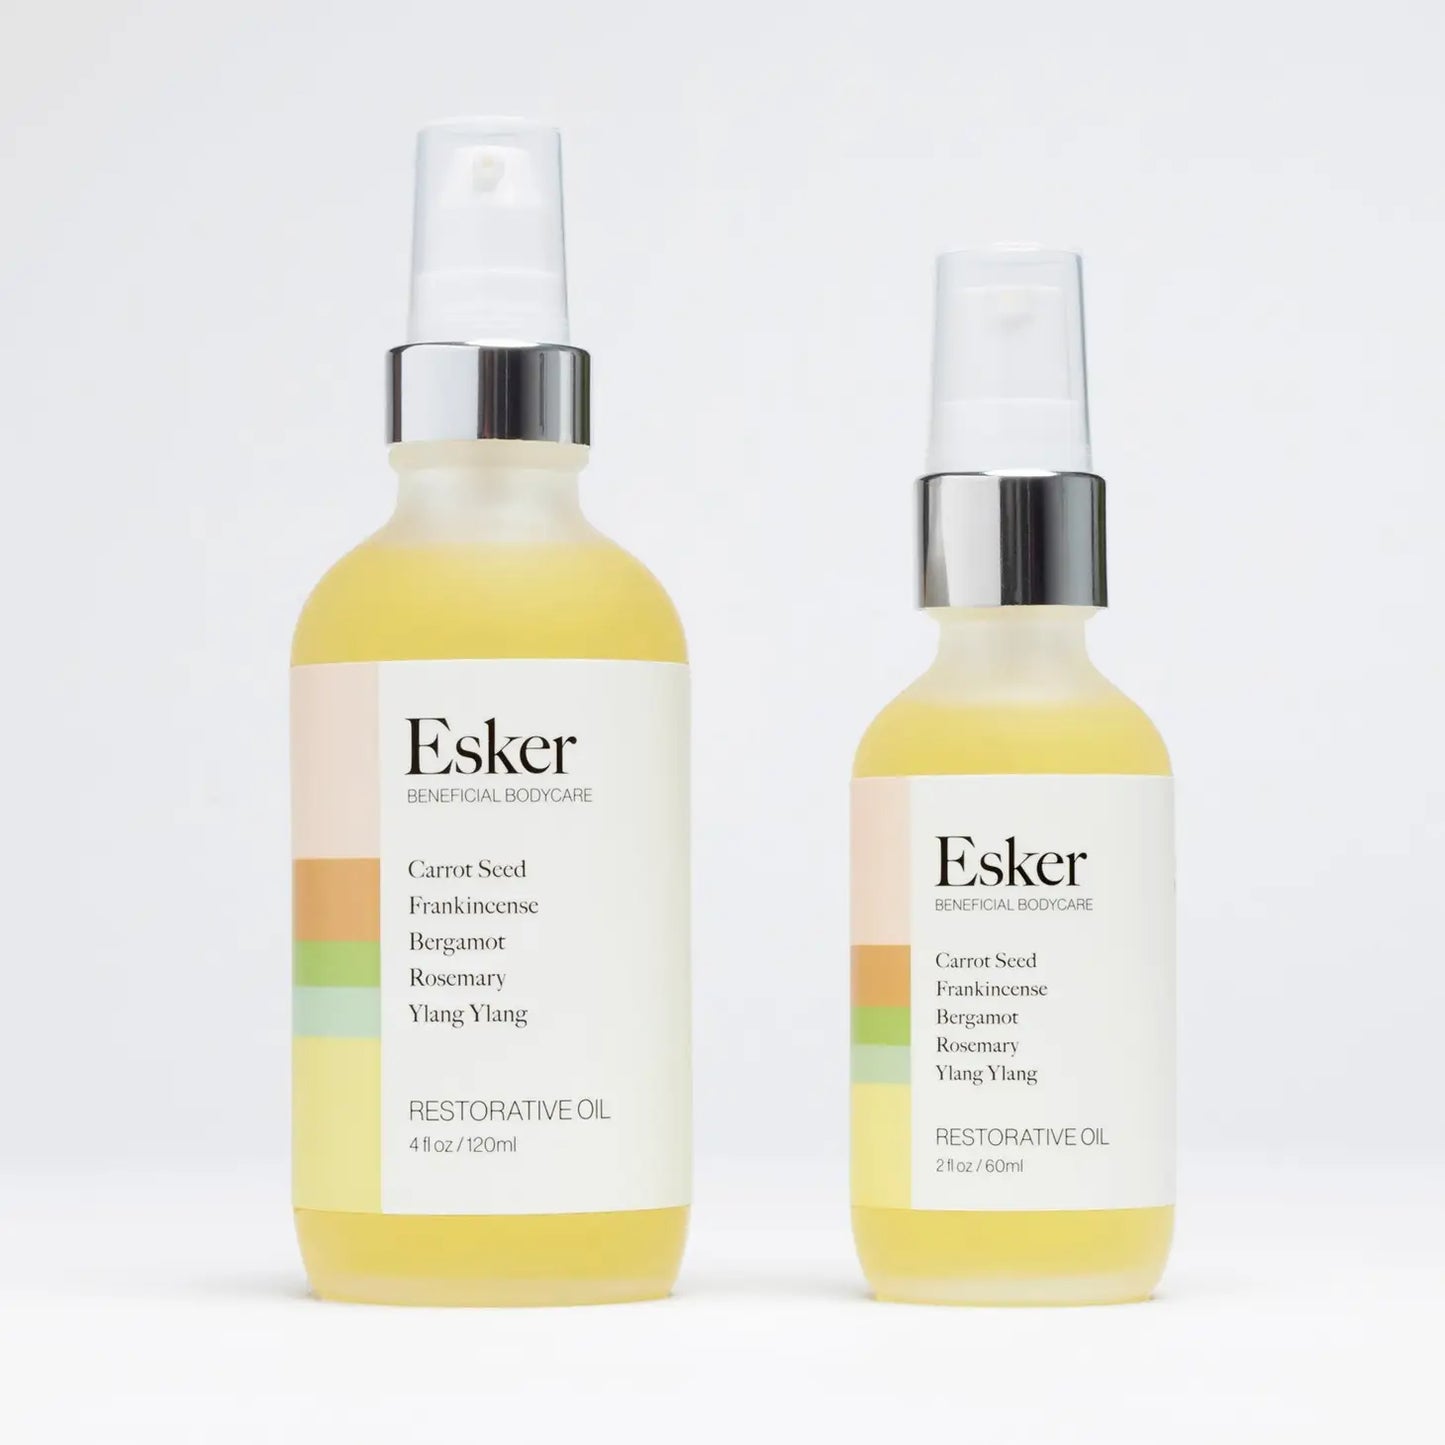 Esker - Restorative oil ( 2 oz )